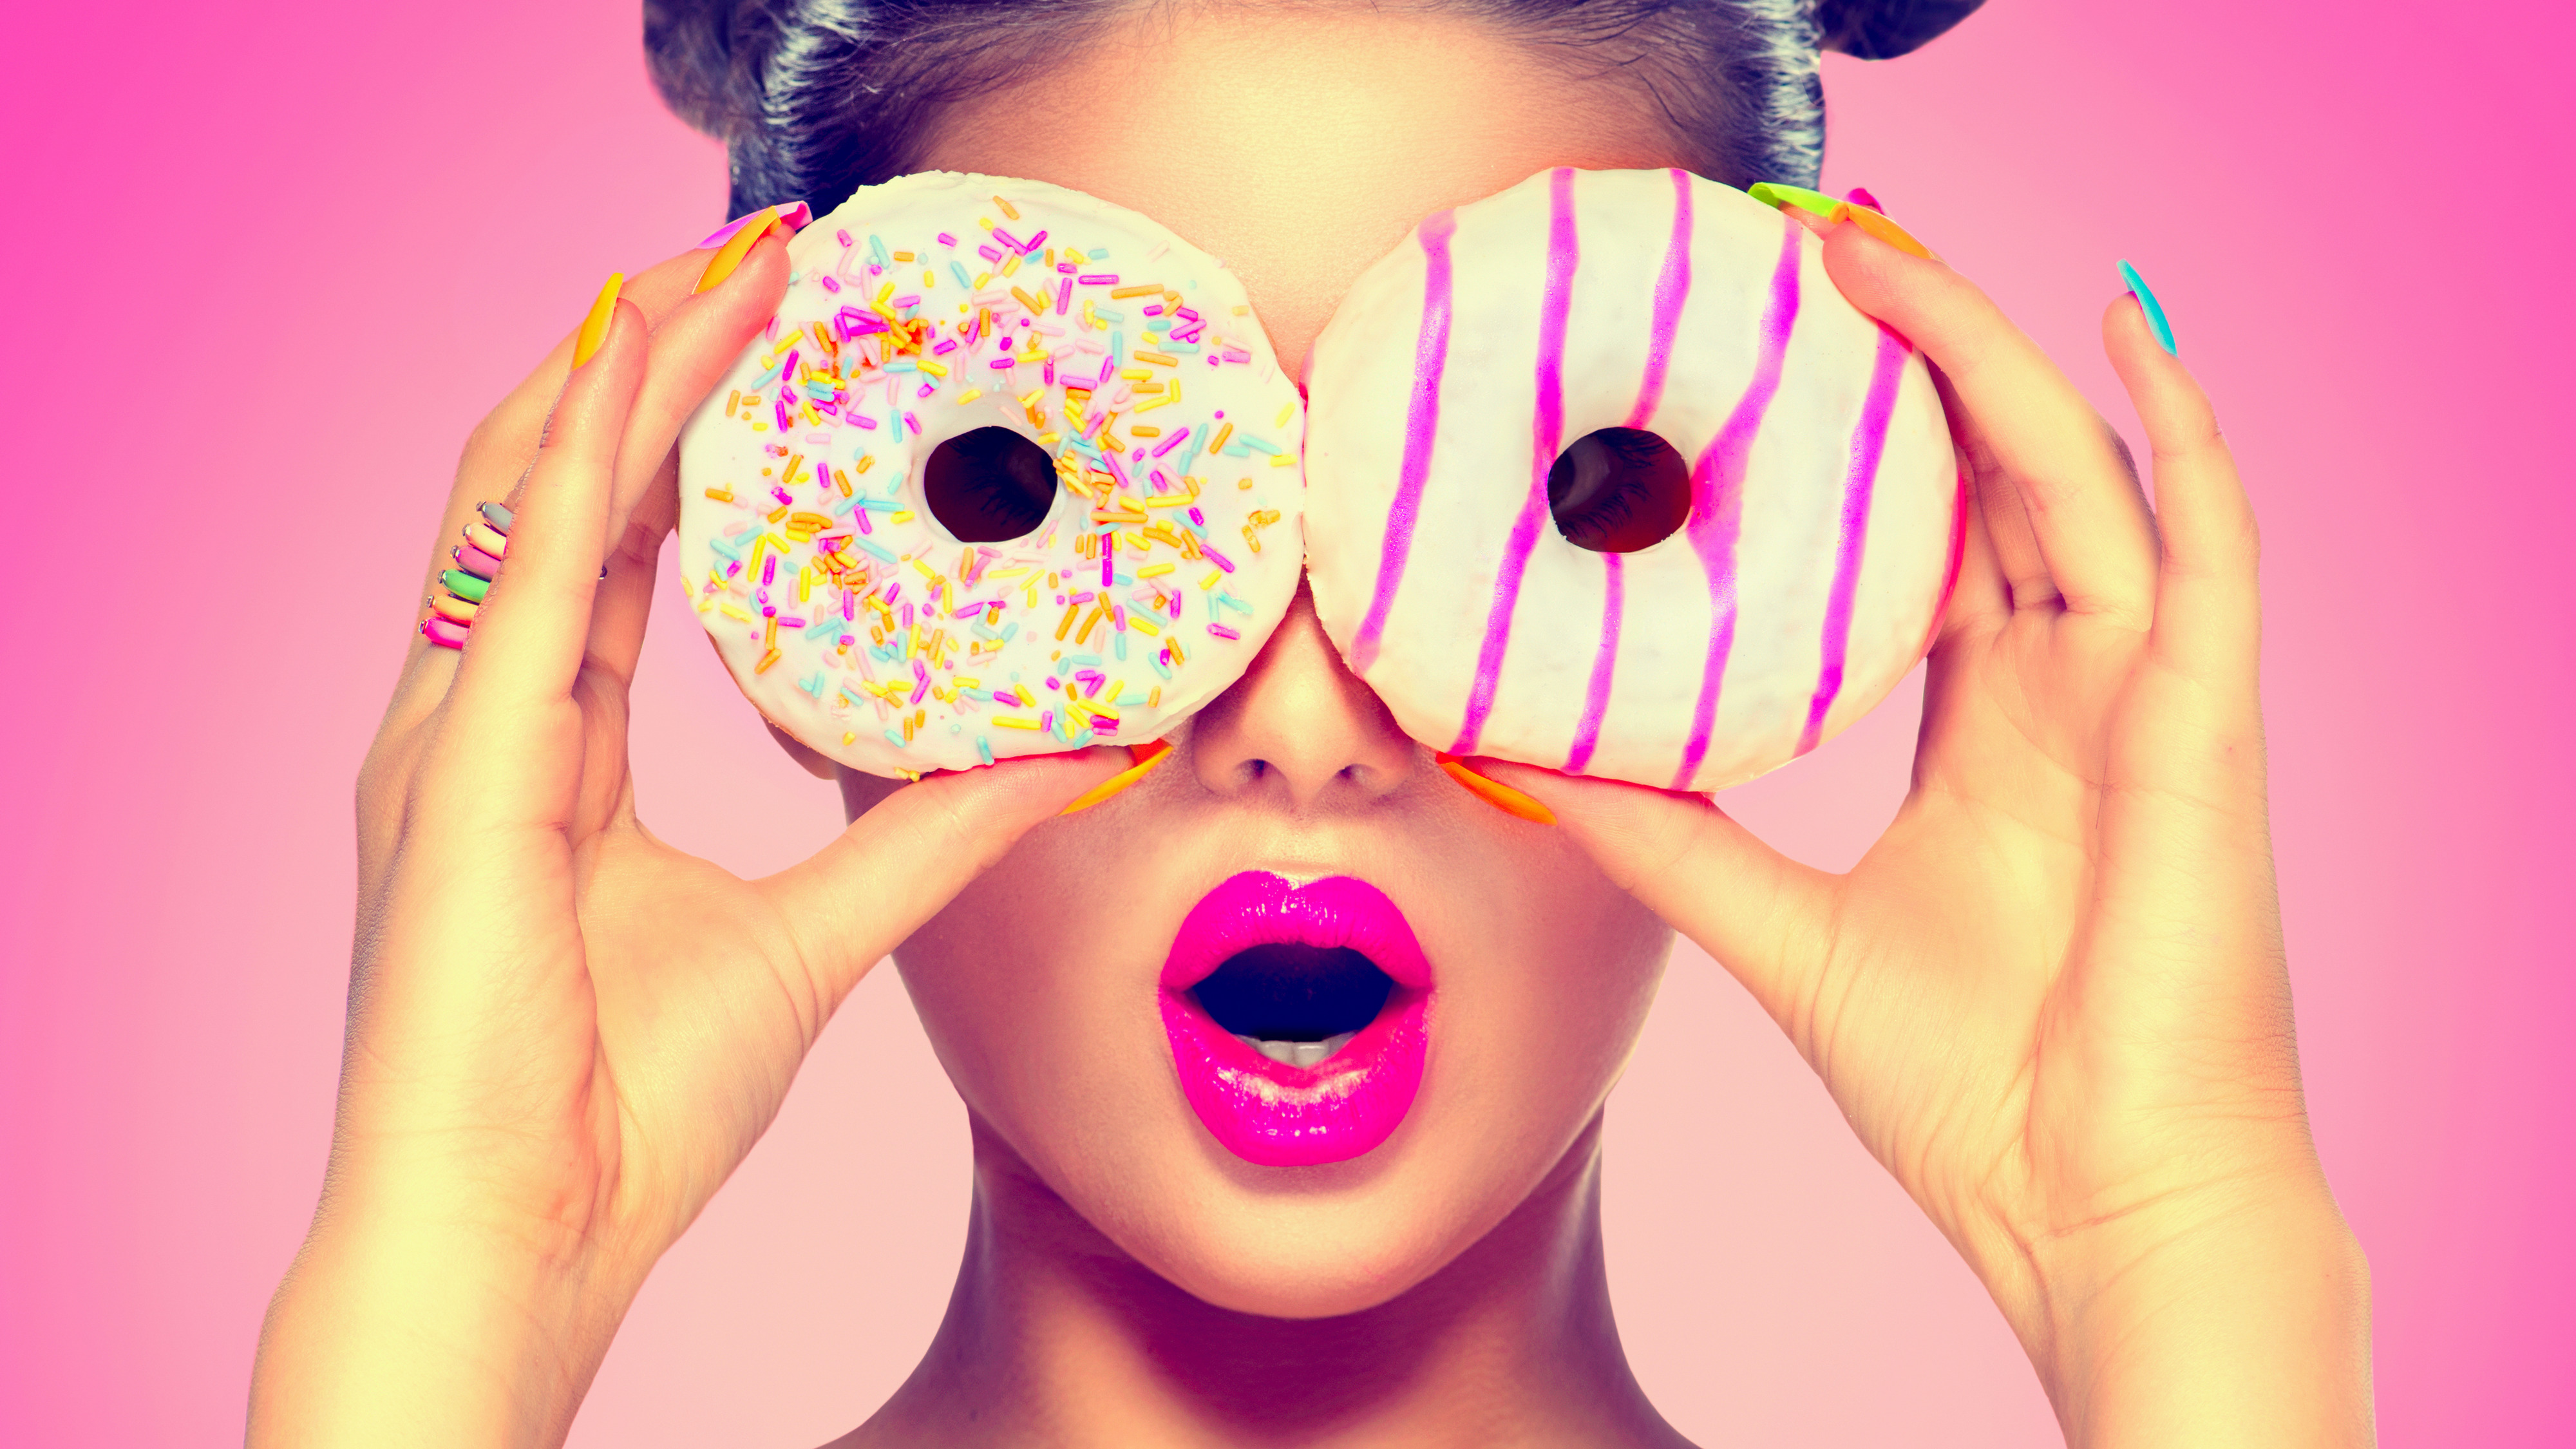 Фото на аватарку в вайбере. Девушка с пончиком. Фотосессия с пончиками. Яркая девушка. Яркая аватарка.